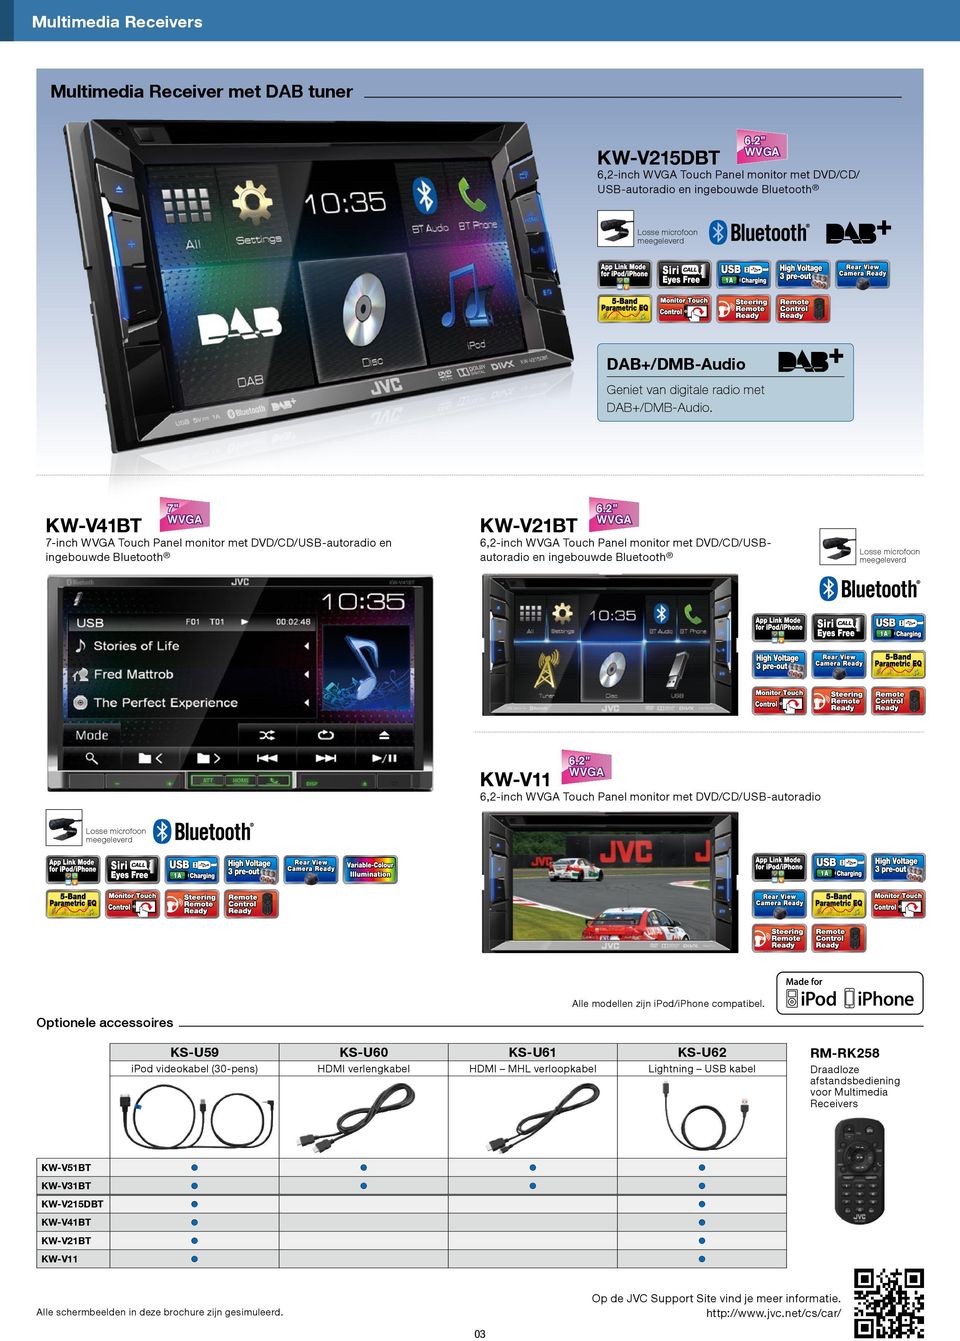 1" 6.2" KW-V21BT 6,2-inch Touch Panel monitor met DVD/CD/USBautoradio en ingebouwde Bluetooth 6.2" 7" 6.1" KW-V11 6.